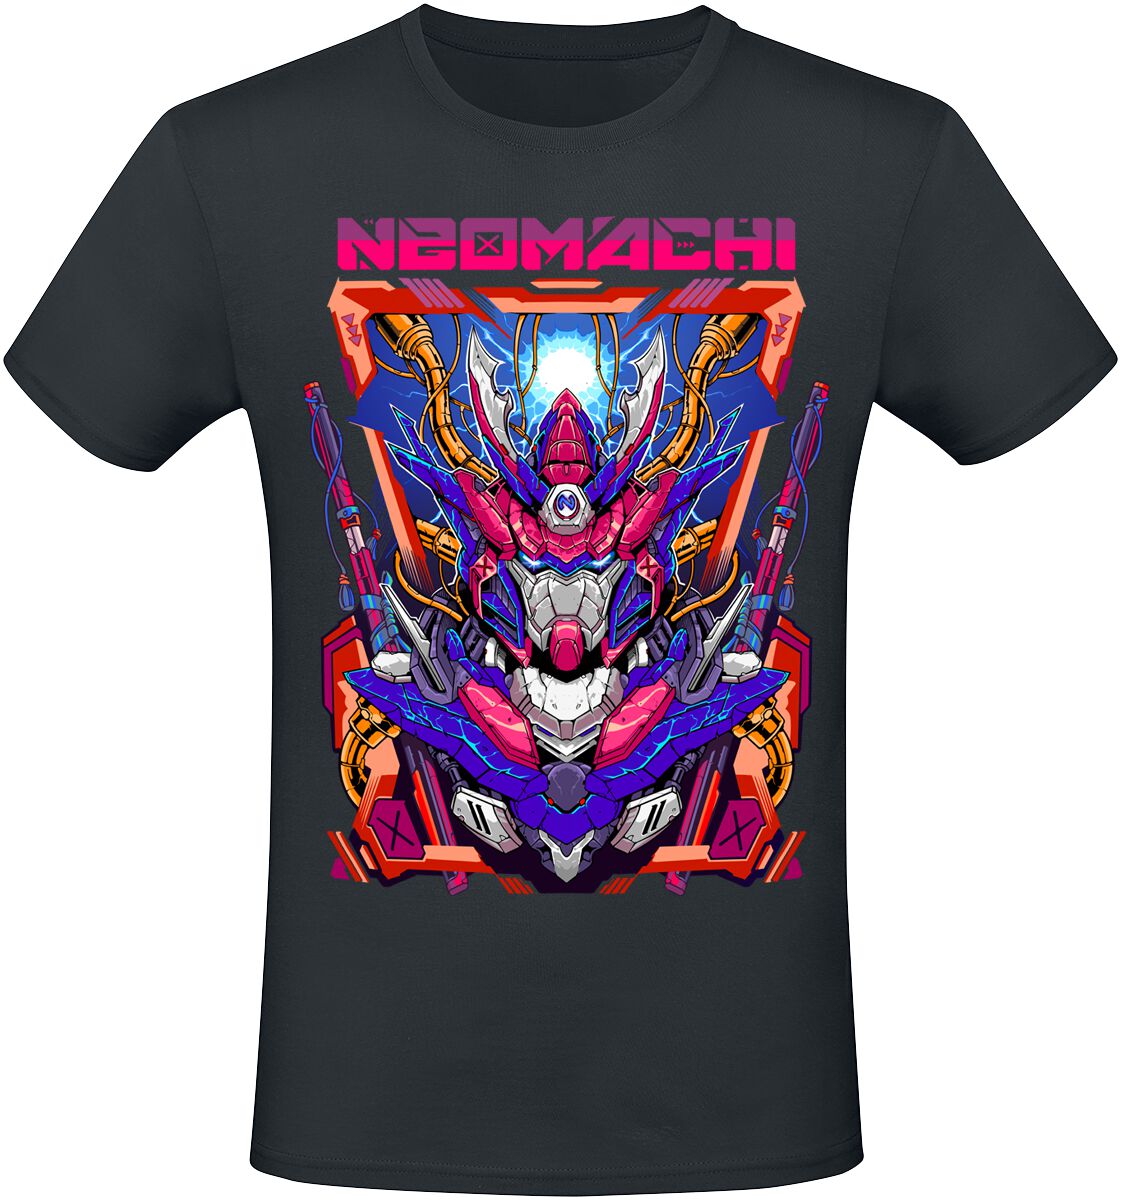 NEOMACHI - Gaming T-Shirt - MECHA - S bis XXL - für Männer - Größe XL - schwarz  - EMP exklusives Merchandise!